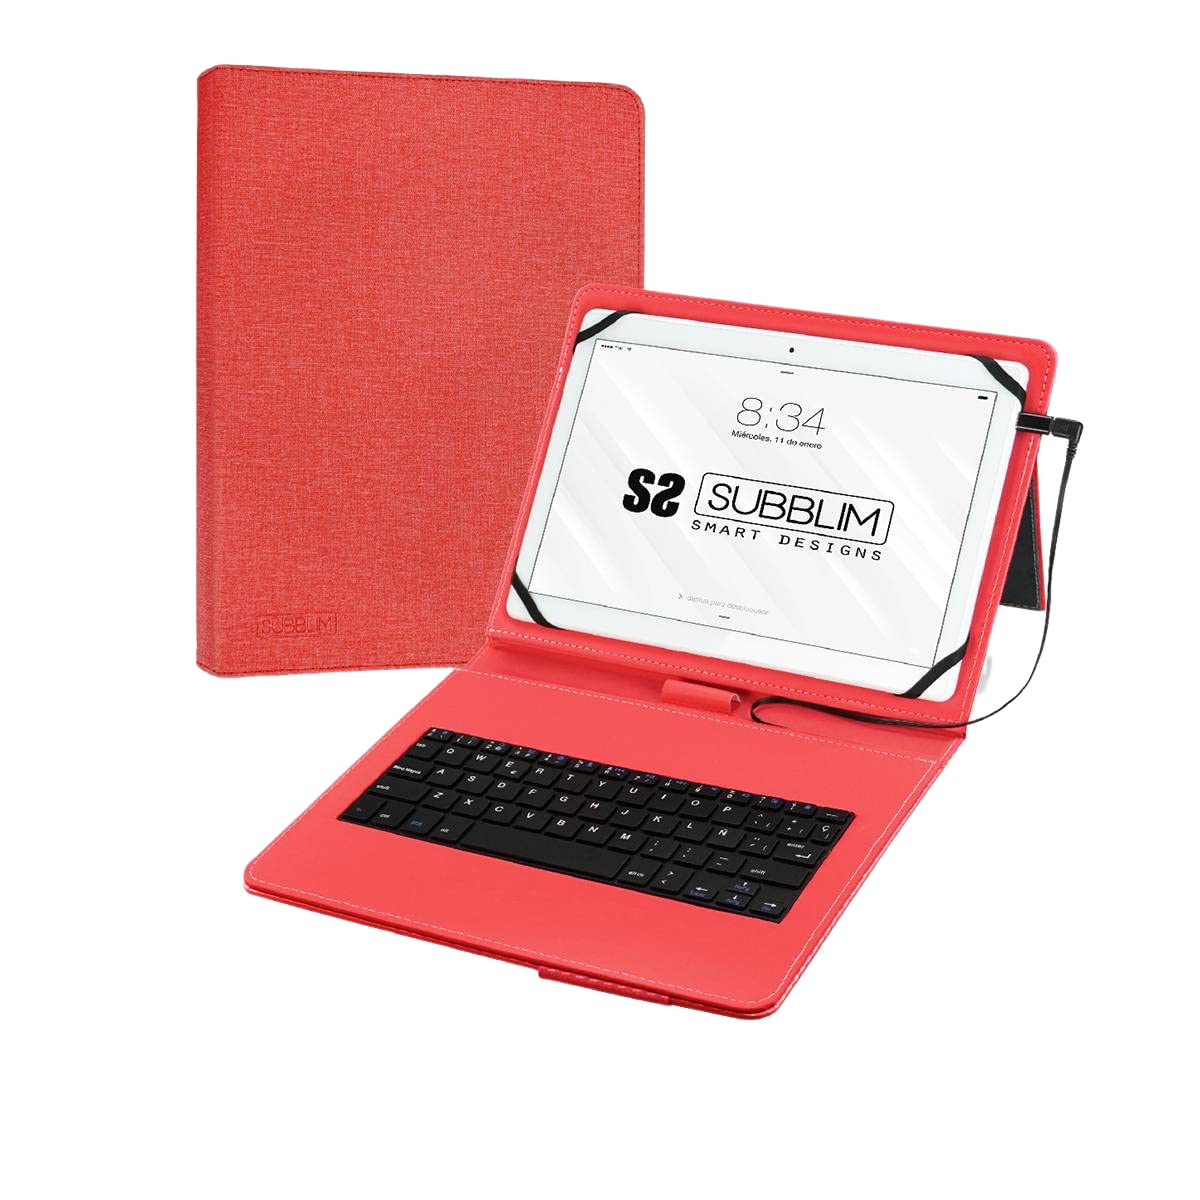 Subblim SUB-KT1-USB002 Schutzhülle mit Tastatur für Tablet, Mehrfarbig, Einheitsgröße